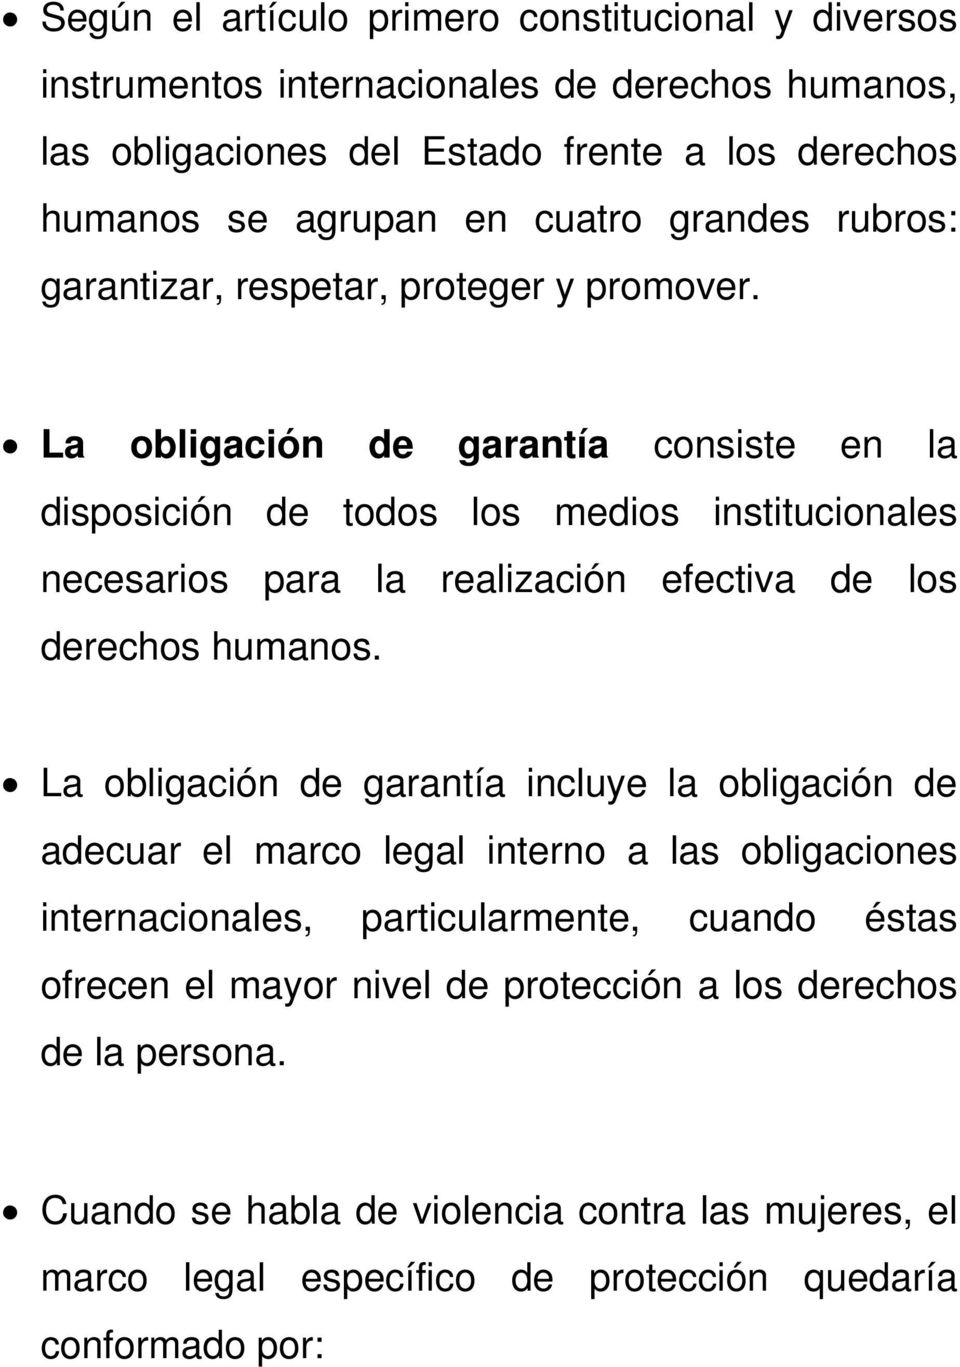 La obligación de garantía consiste en la disposición de todos los medios institucionales necesarios para la realización efectiva de los derechos humanos.